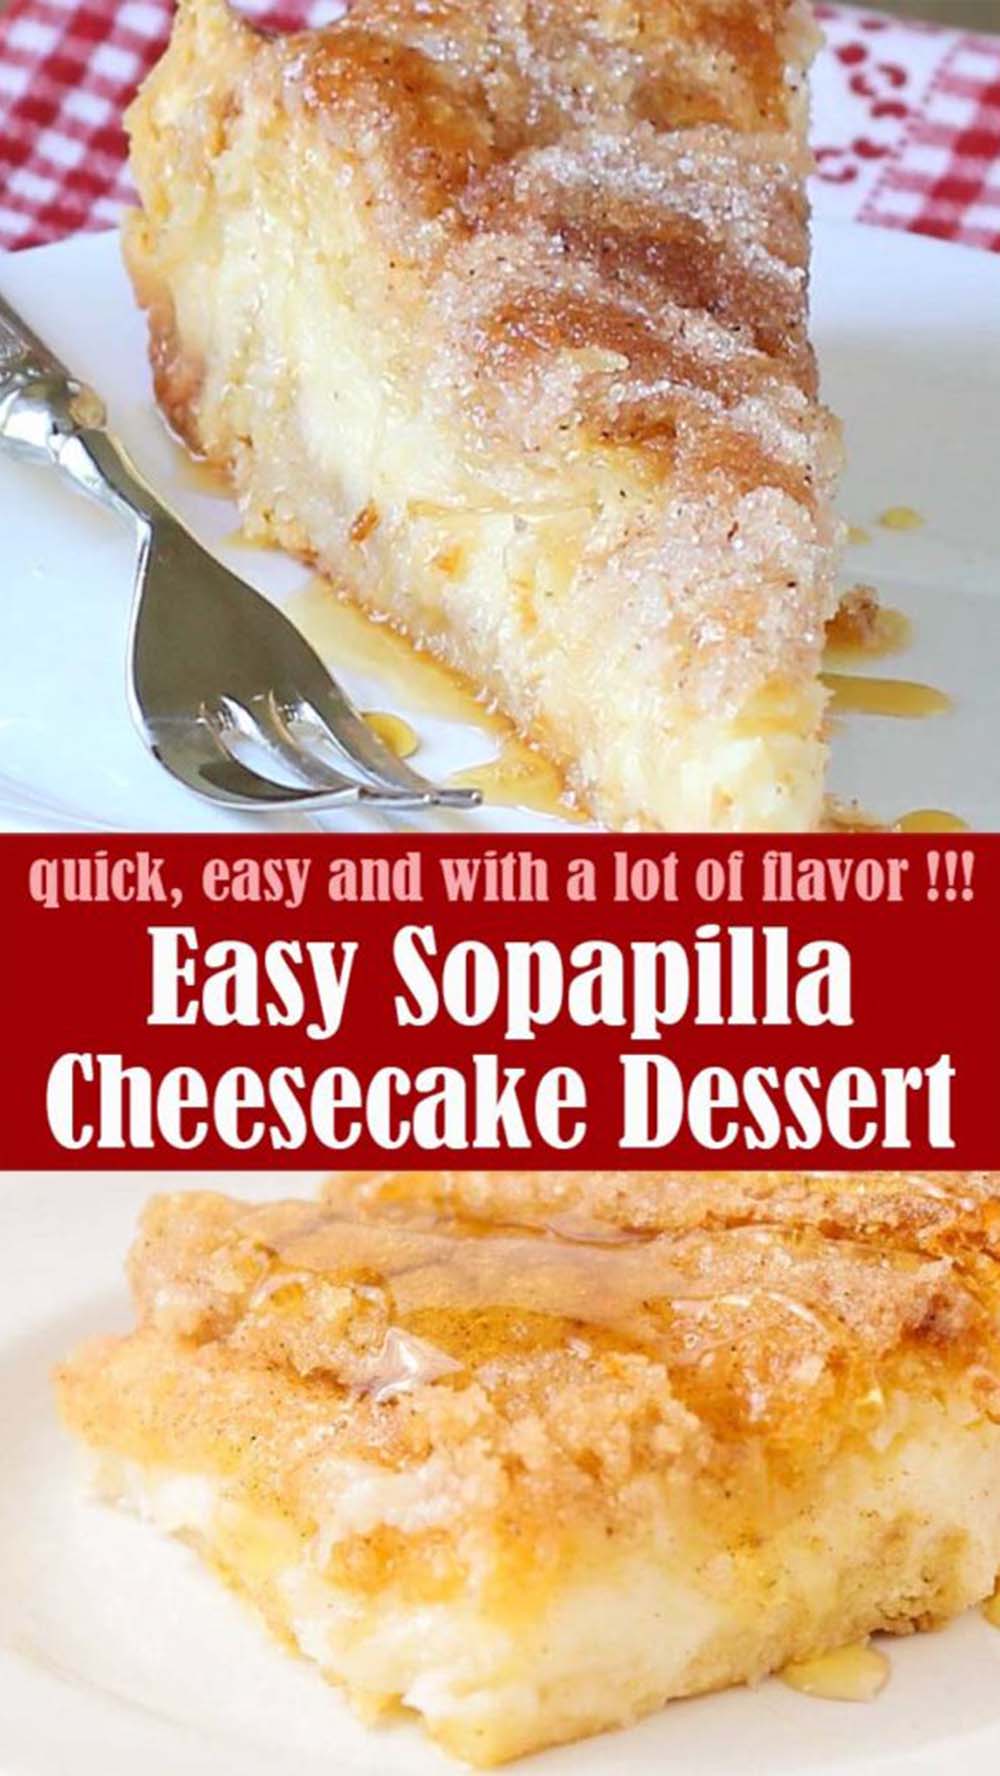 Easy Sopapilla Cheesecake Dessert Recipe